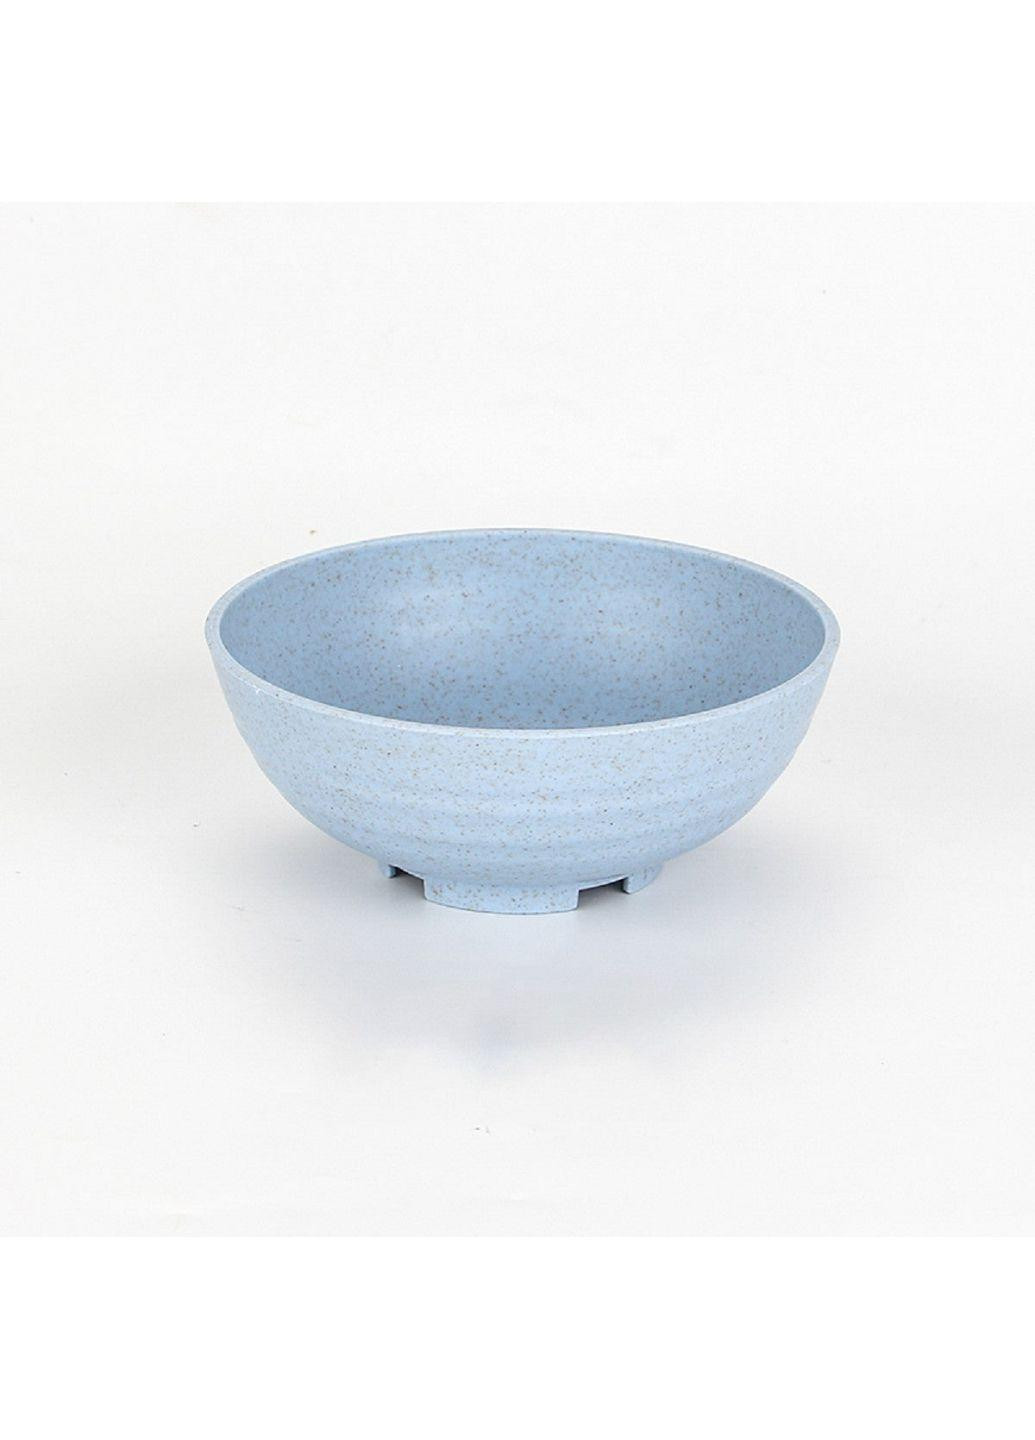 Набор: 4 шт. эко-тарелок (диаметр 14,5 см), голубой (68-1175) No Brand тёмно-голубые